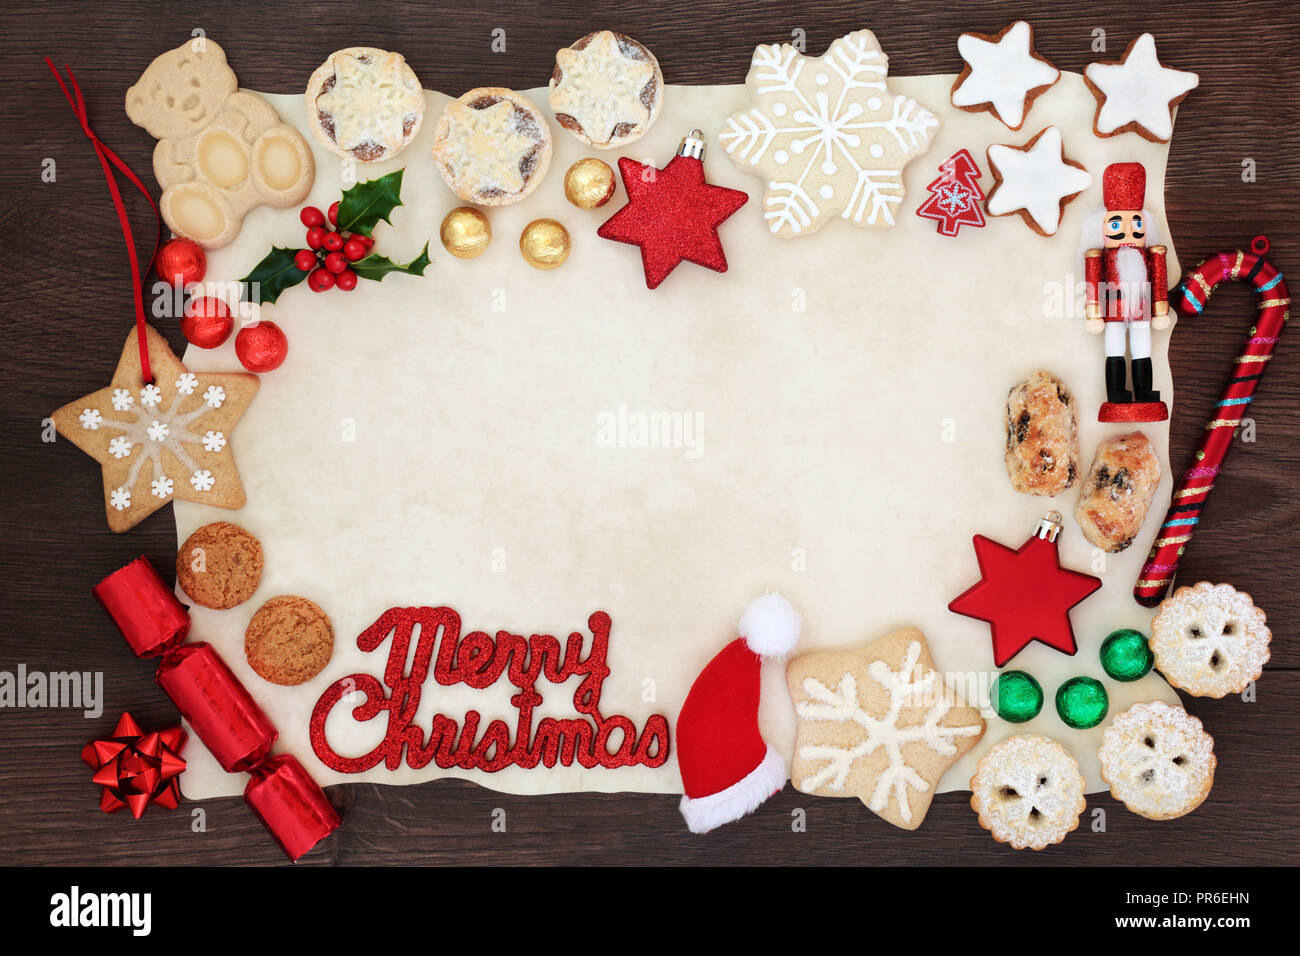 Buon Natale del bordo dello sfondo con segno, addobbi per l'albero, biscotti, torte, inverno flora e cioccolatini in lamina su carta pergamena sul legno rustico Foto Stock